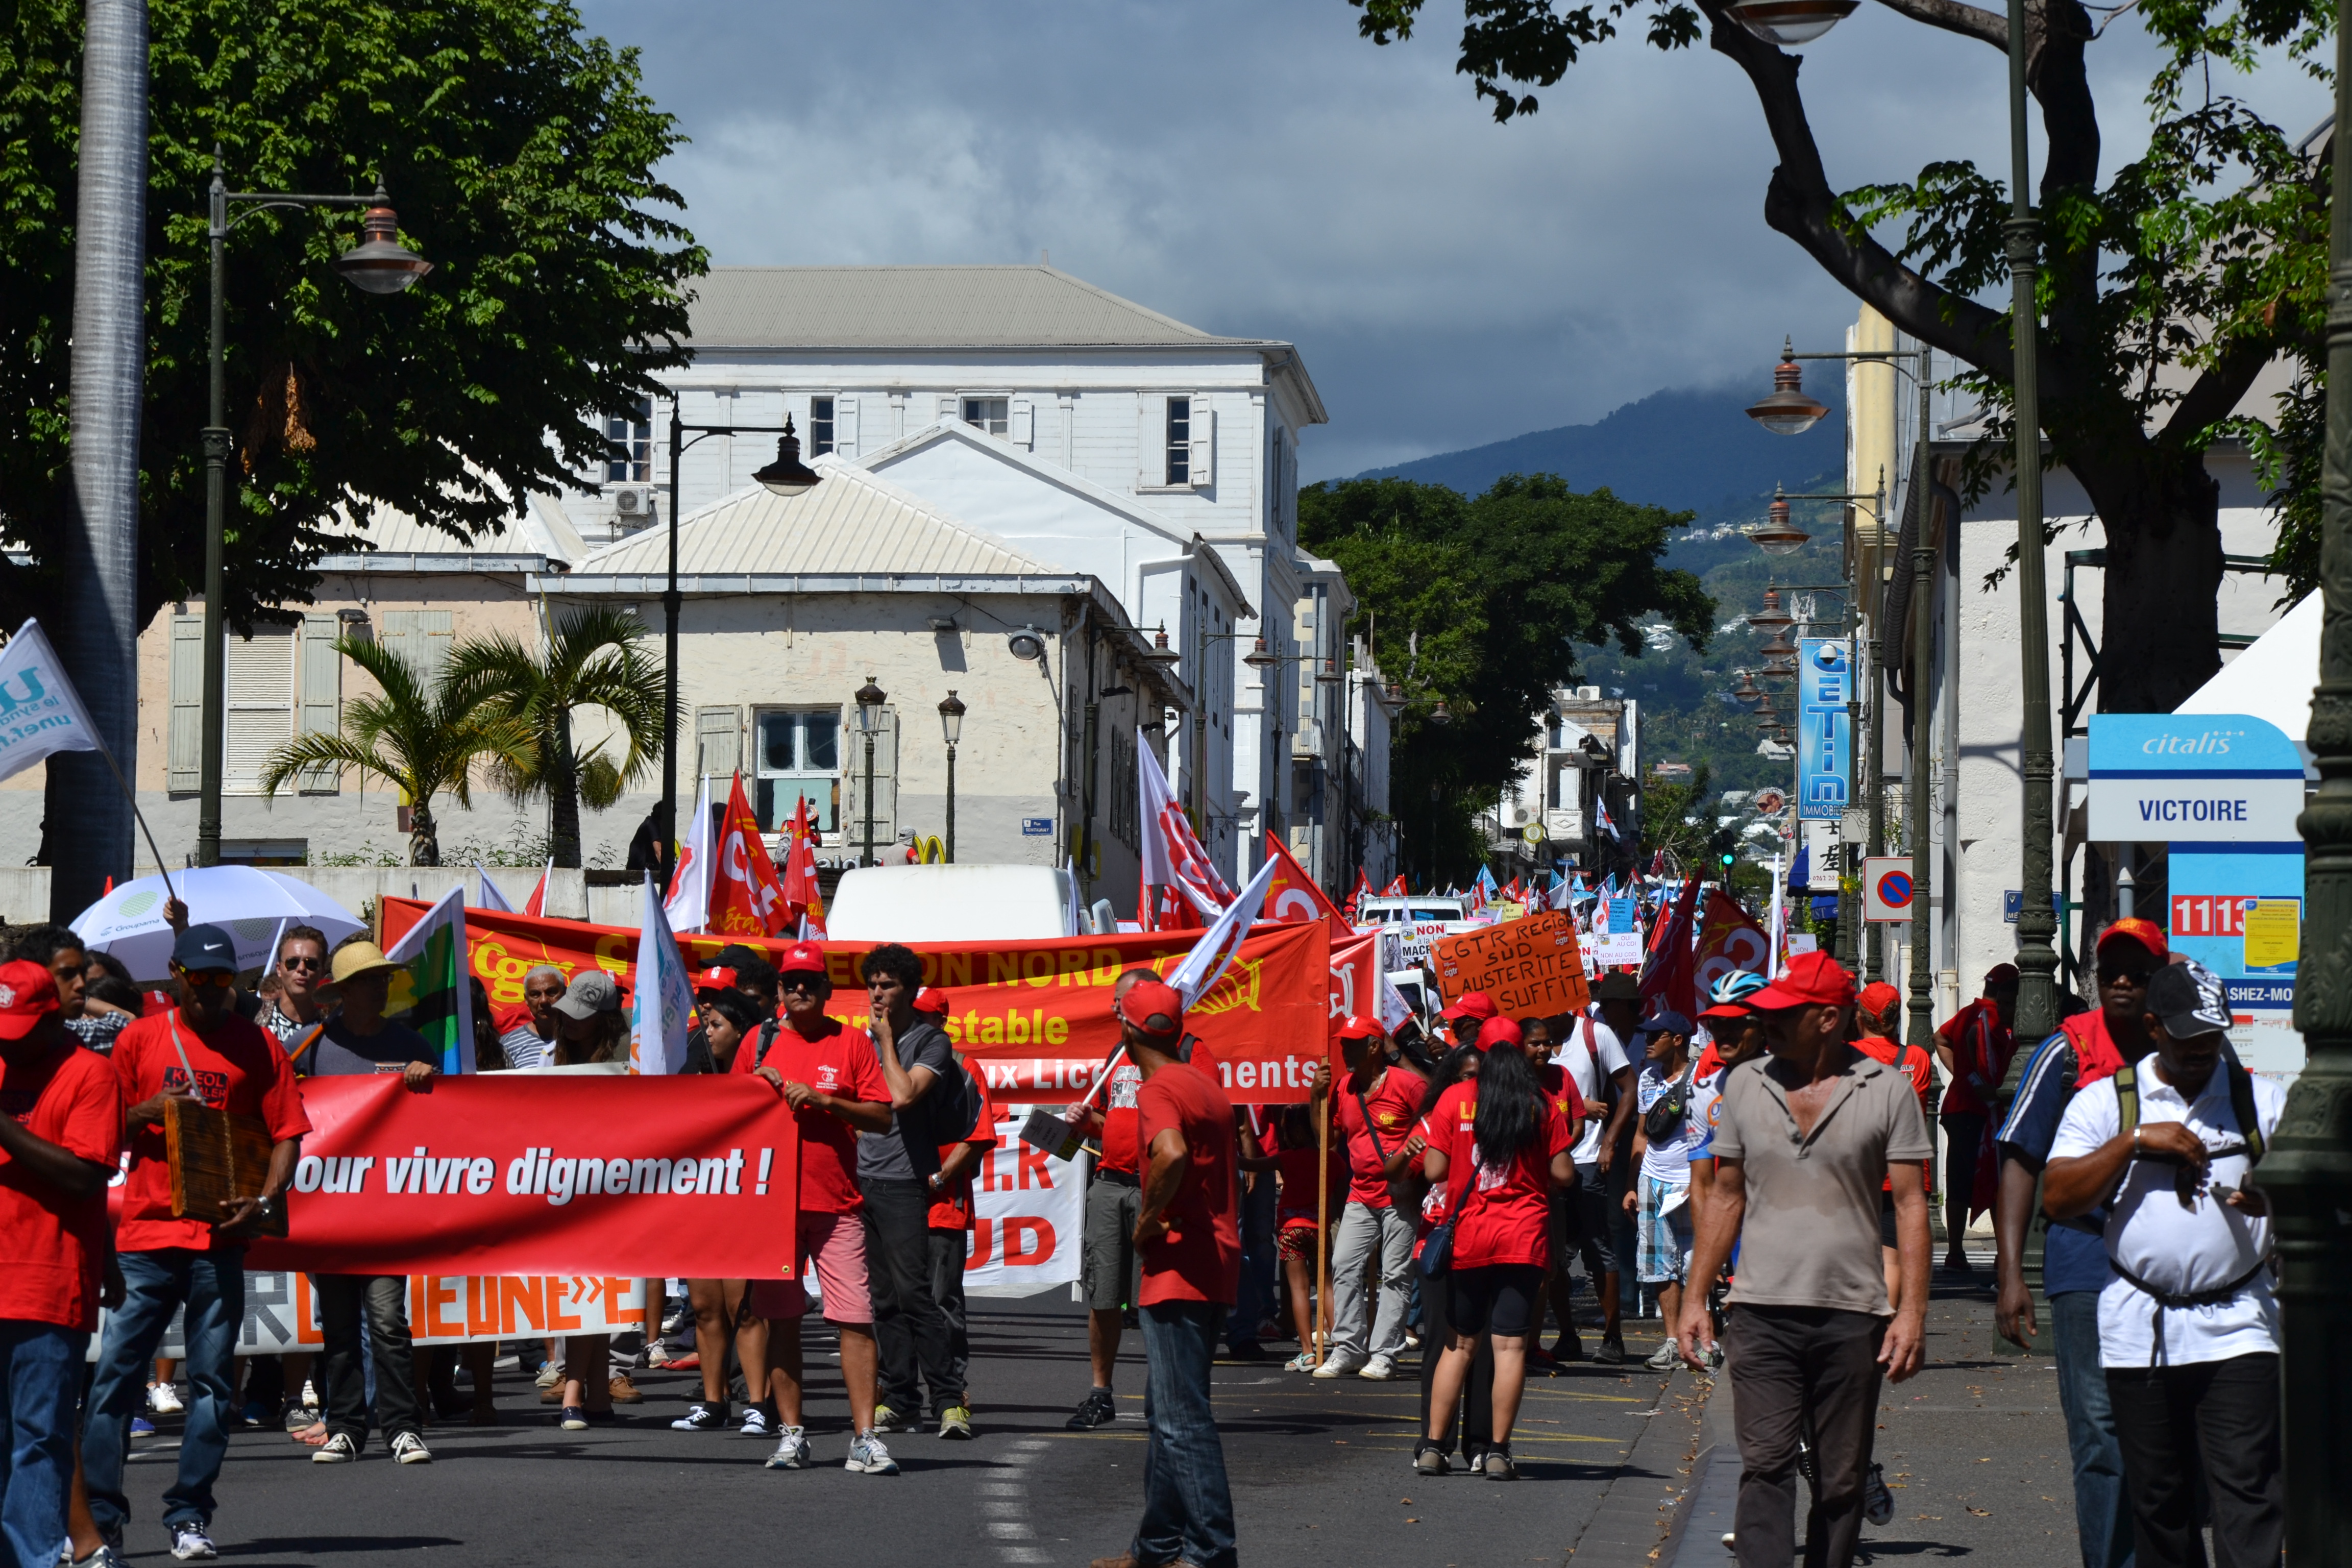 Défilé du 1er mai: Près de 1.000 personnes mobilisées contre l'austérité